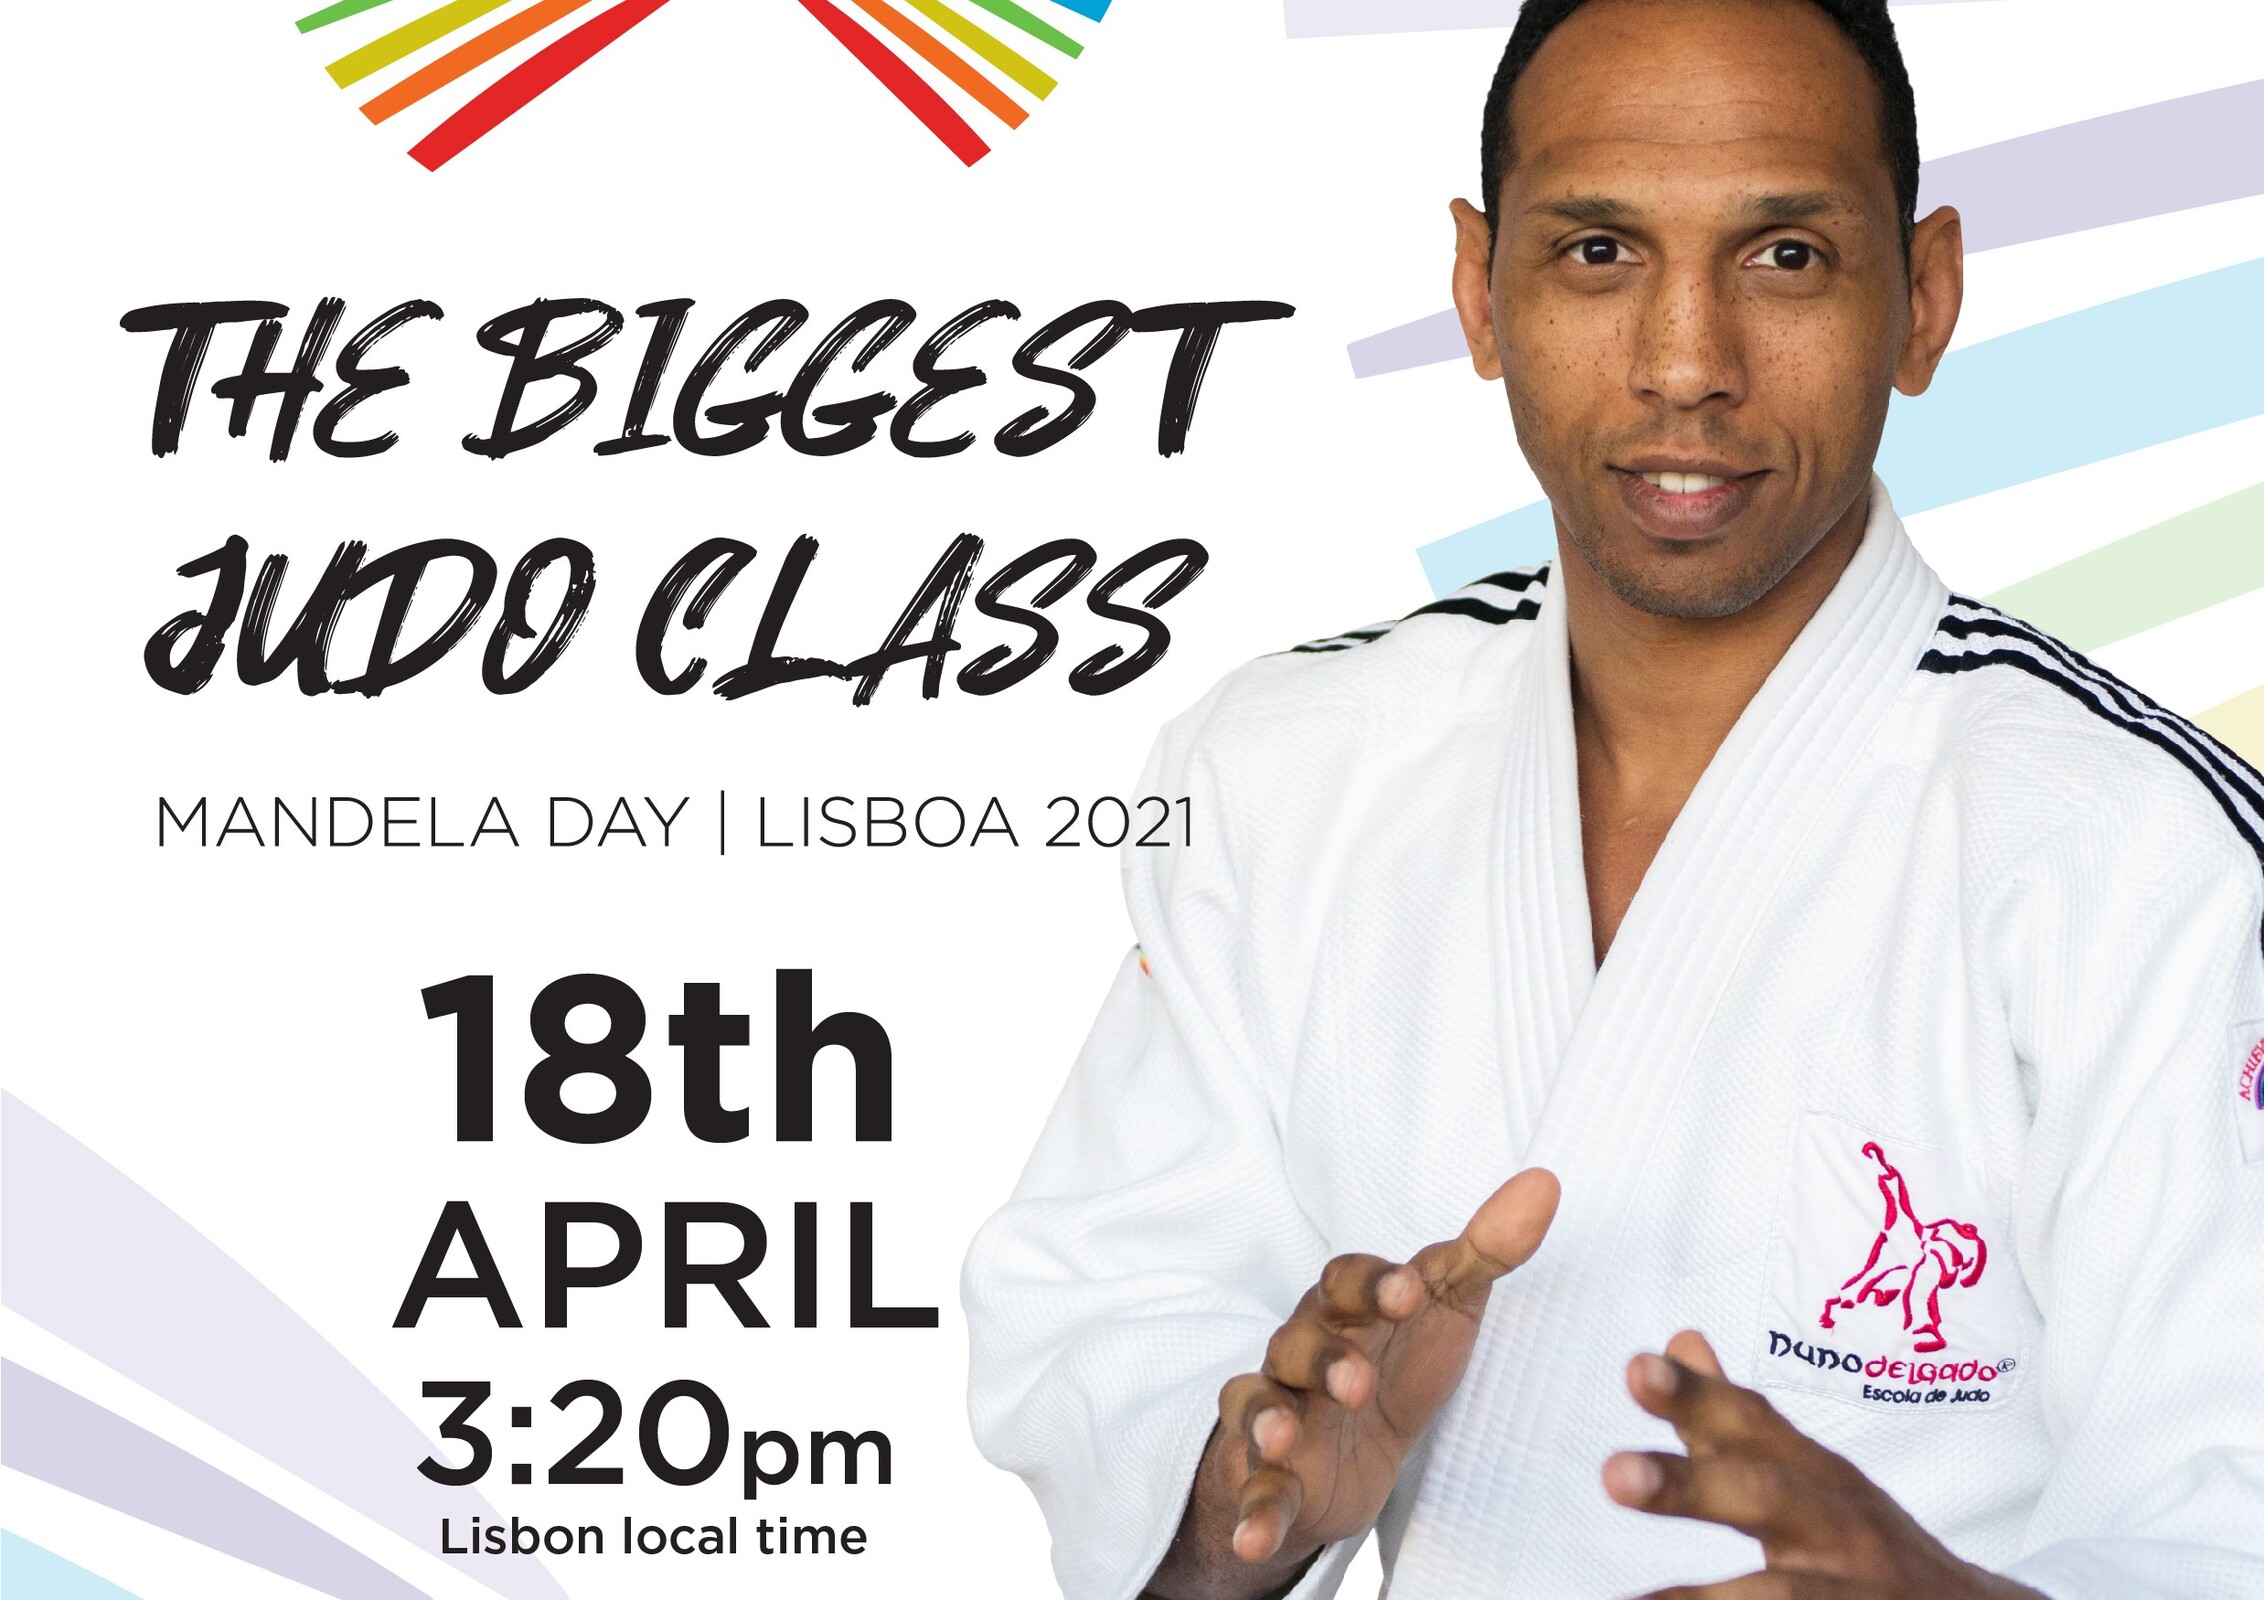 Município associa-se à “Maior Aula de Judo internacional online” – Participe!